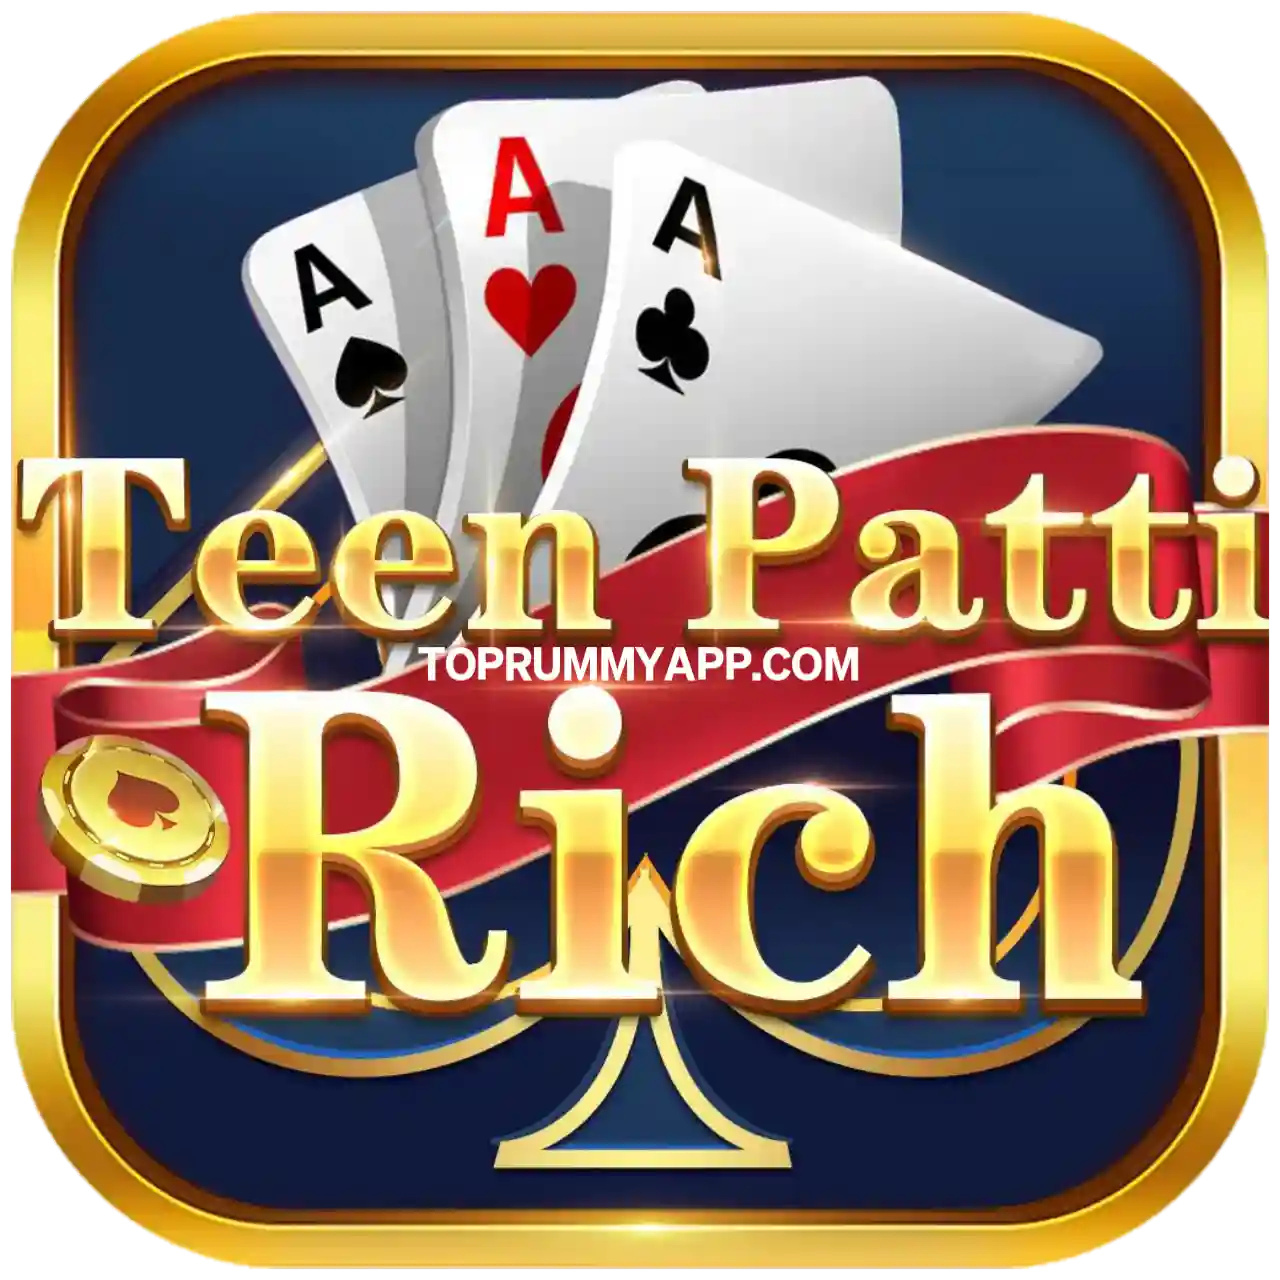 Teen Patti Rich App Download - Top 20 Teen Patti App List